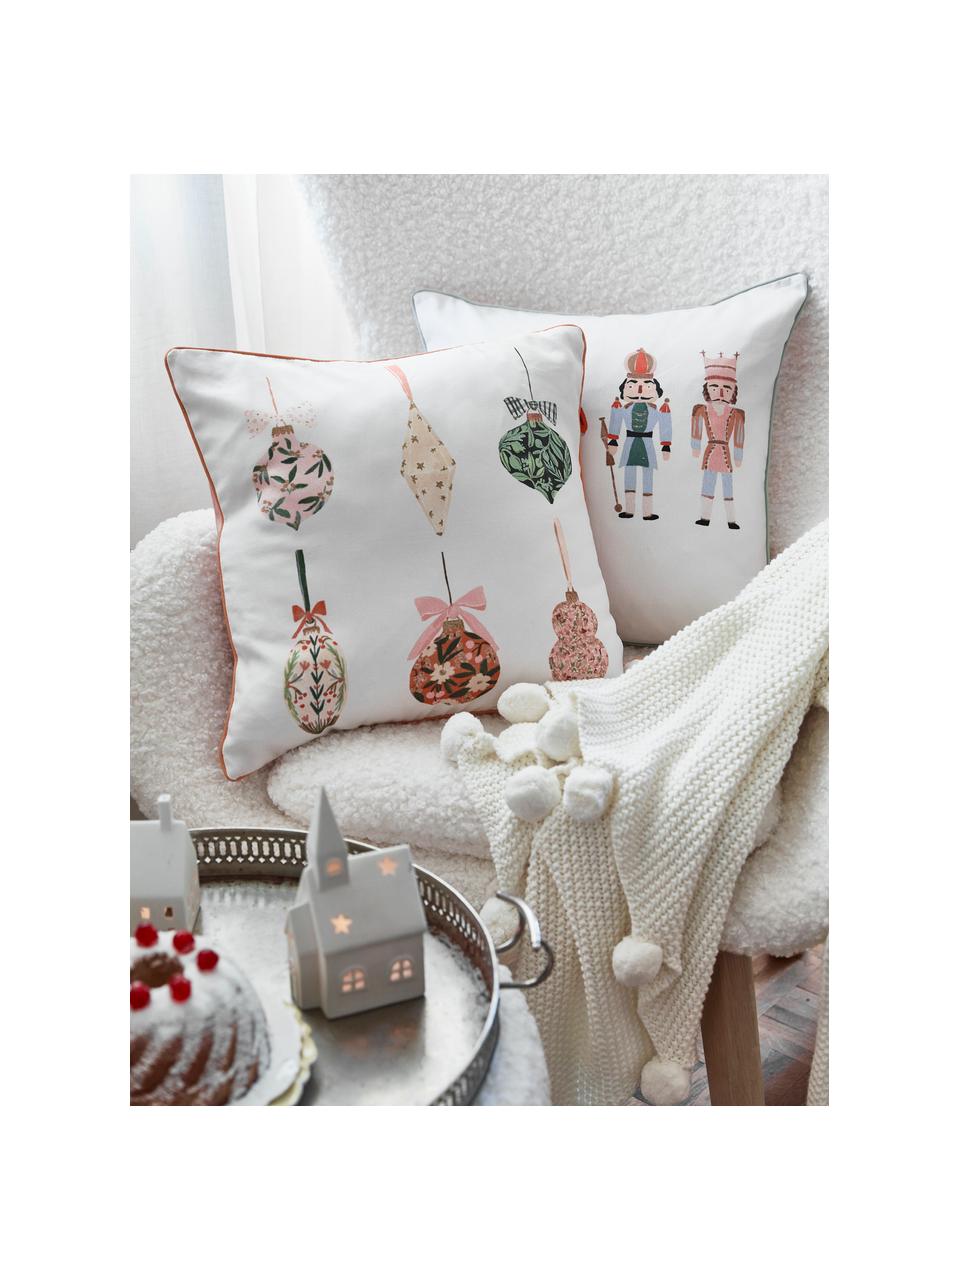 Designer dubbelzijdige kussenhoes Christmas Balls van Candice Gray, 100% katoen, GOTS gecertificeerd, Multicolour, 45 x 45 cm